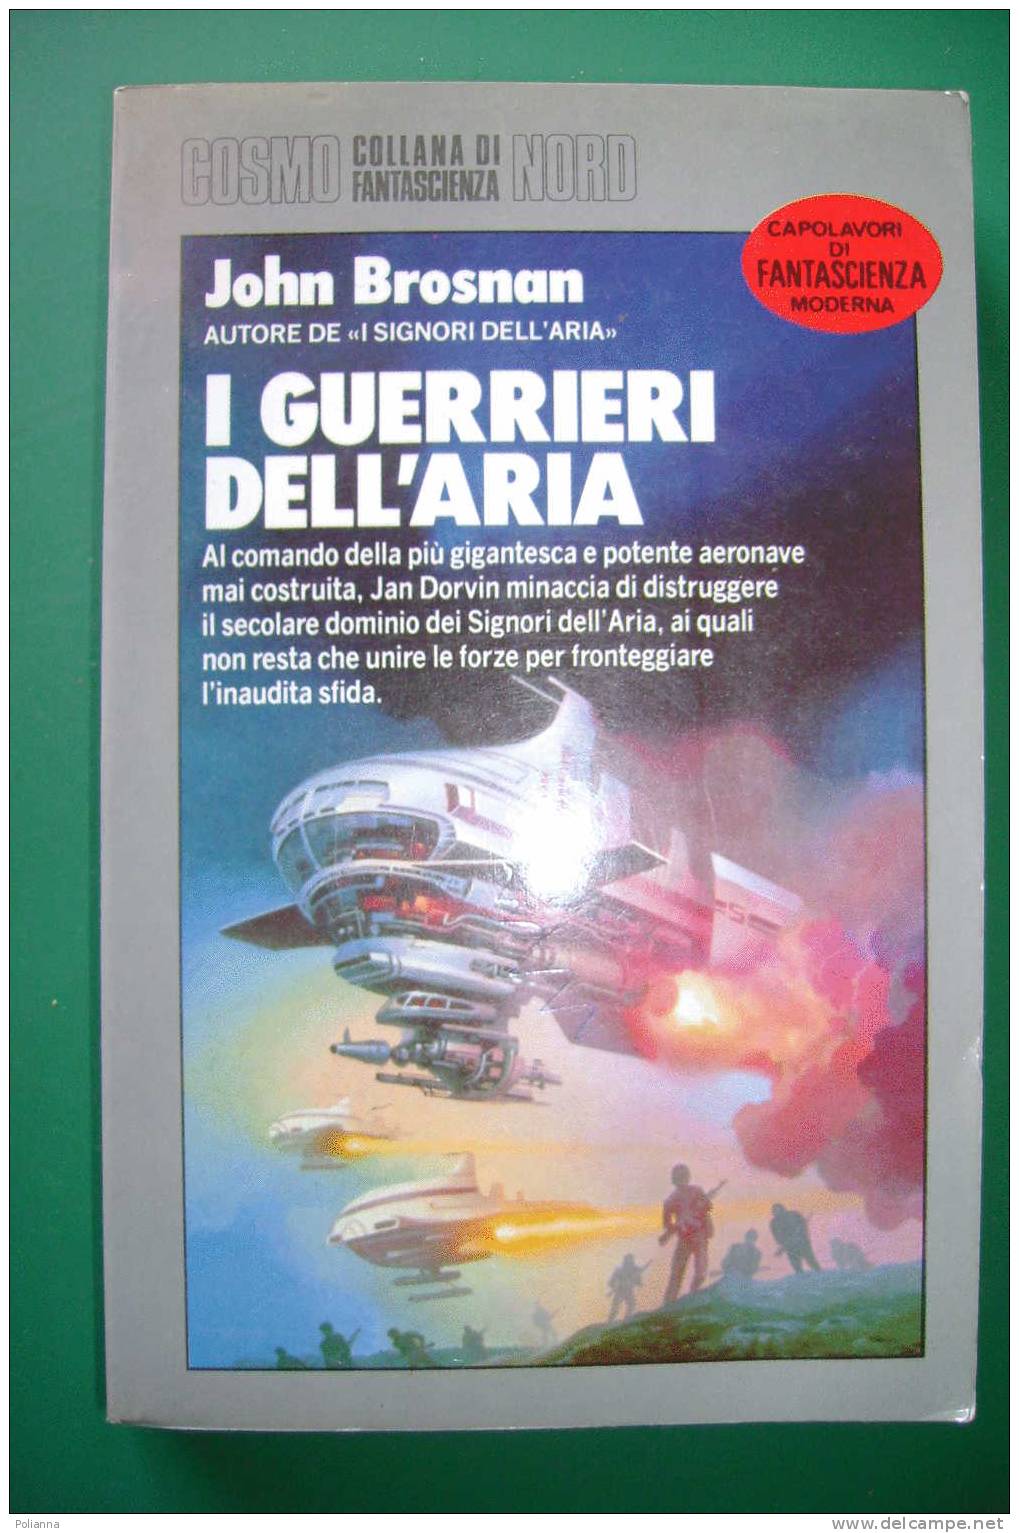 PDN/21 John Brosnan I GUERRIERI DELL'ARIA Cosmo Argento - Editrice Nord 1990/fantascienza - Sci-Fi & Fantasy